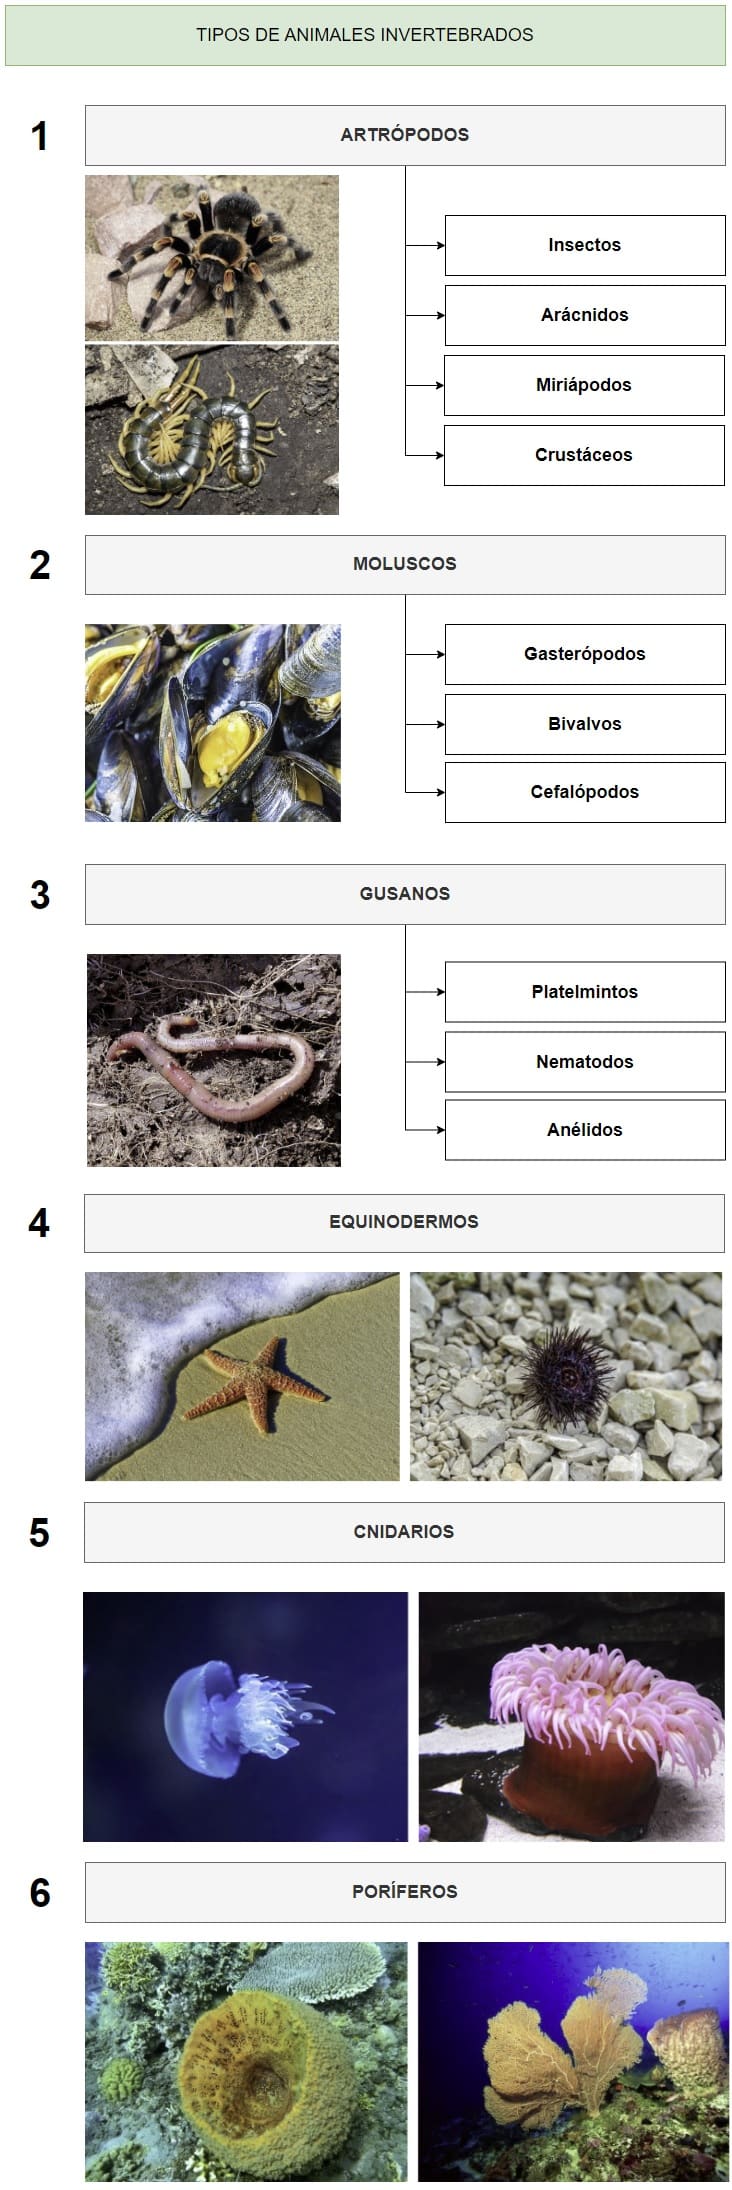 clasificación de los tipos de animales invertebrados